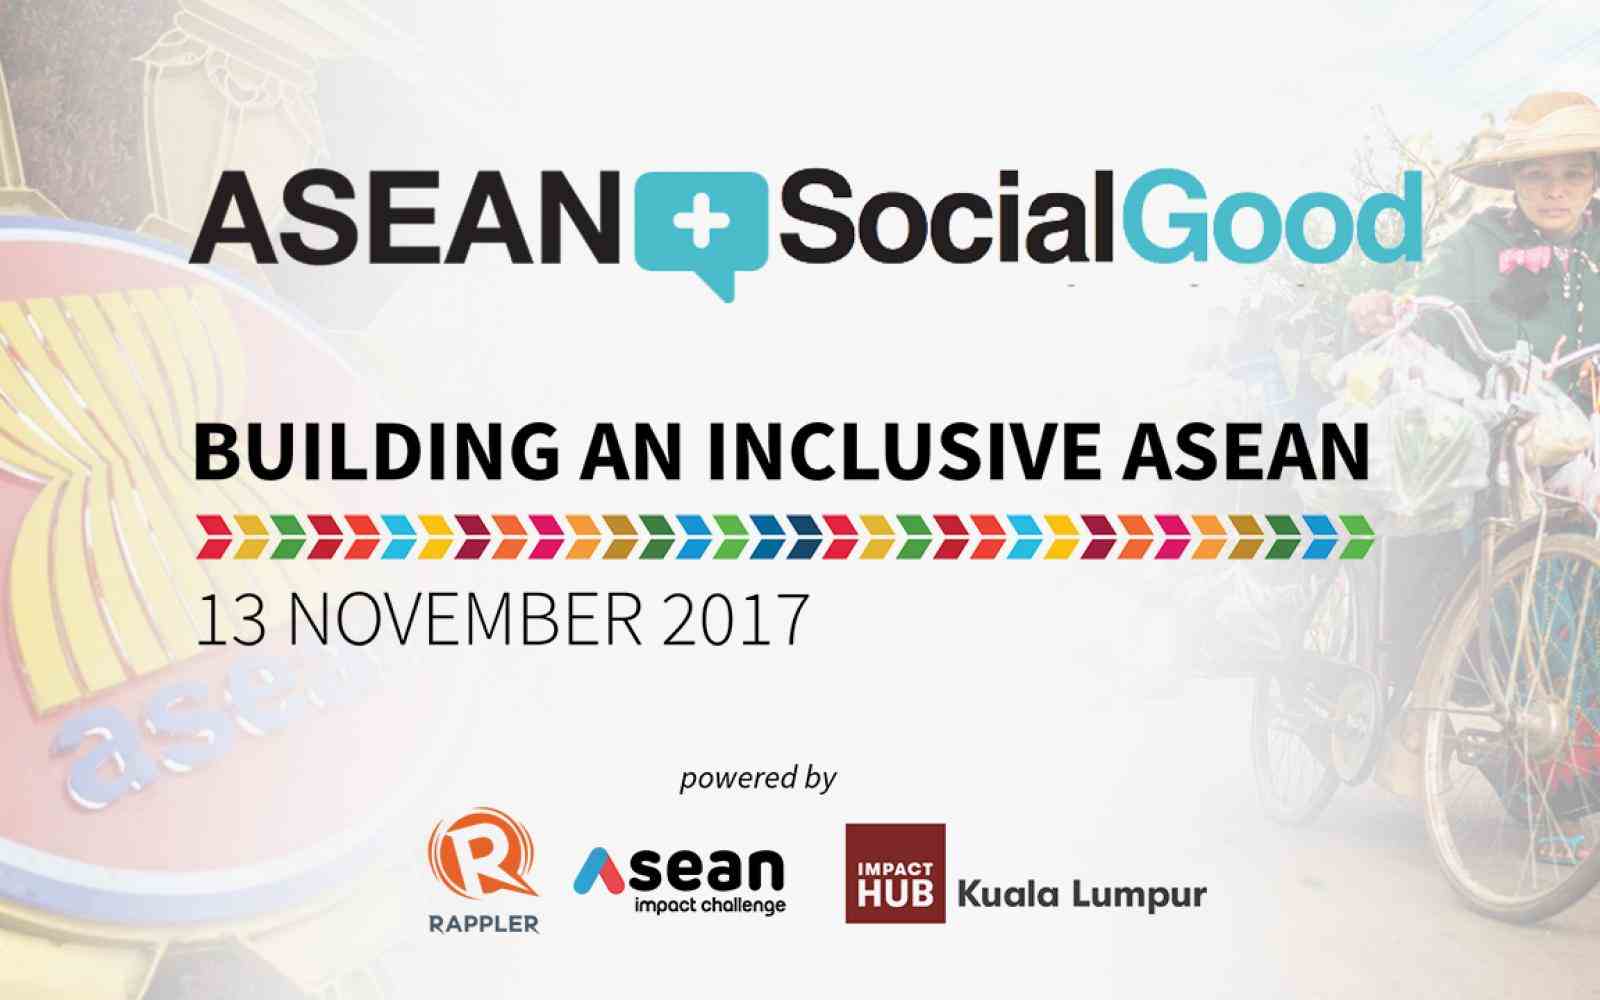 ASEAN Social Good